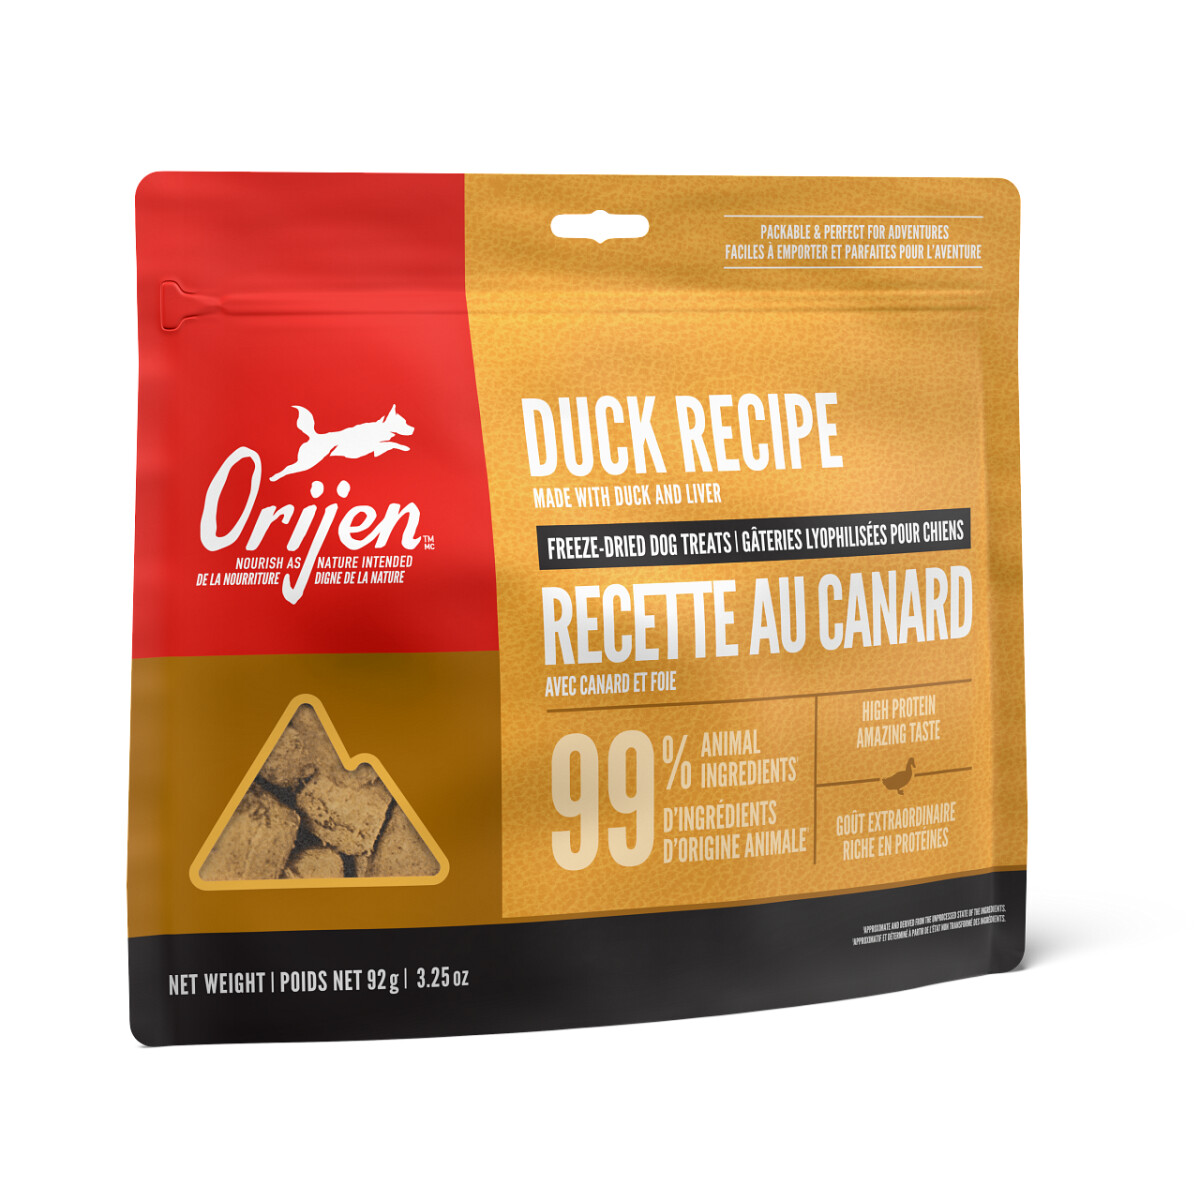 Oj910 - Gâteries lyophilisées recette au canard pour chiens - ORIJEN